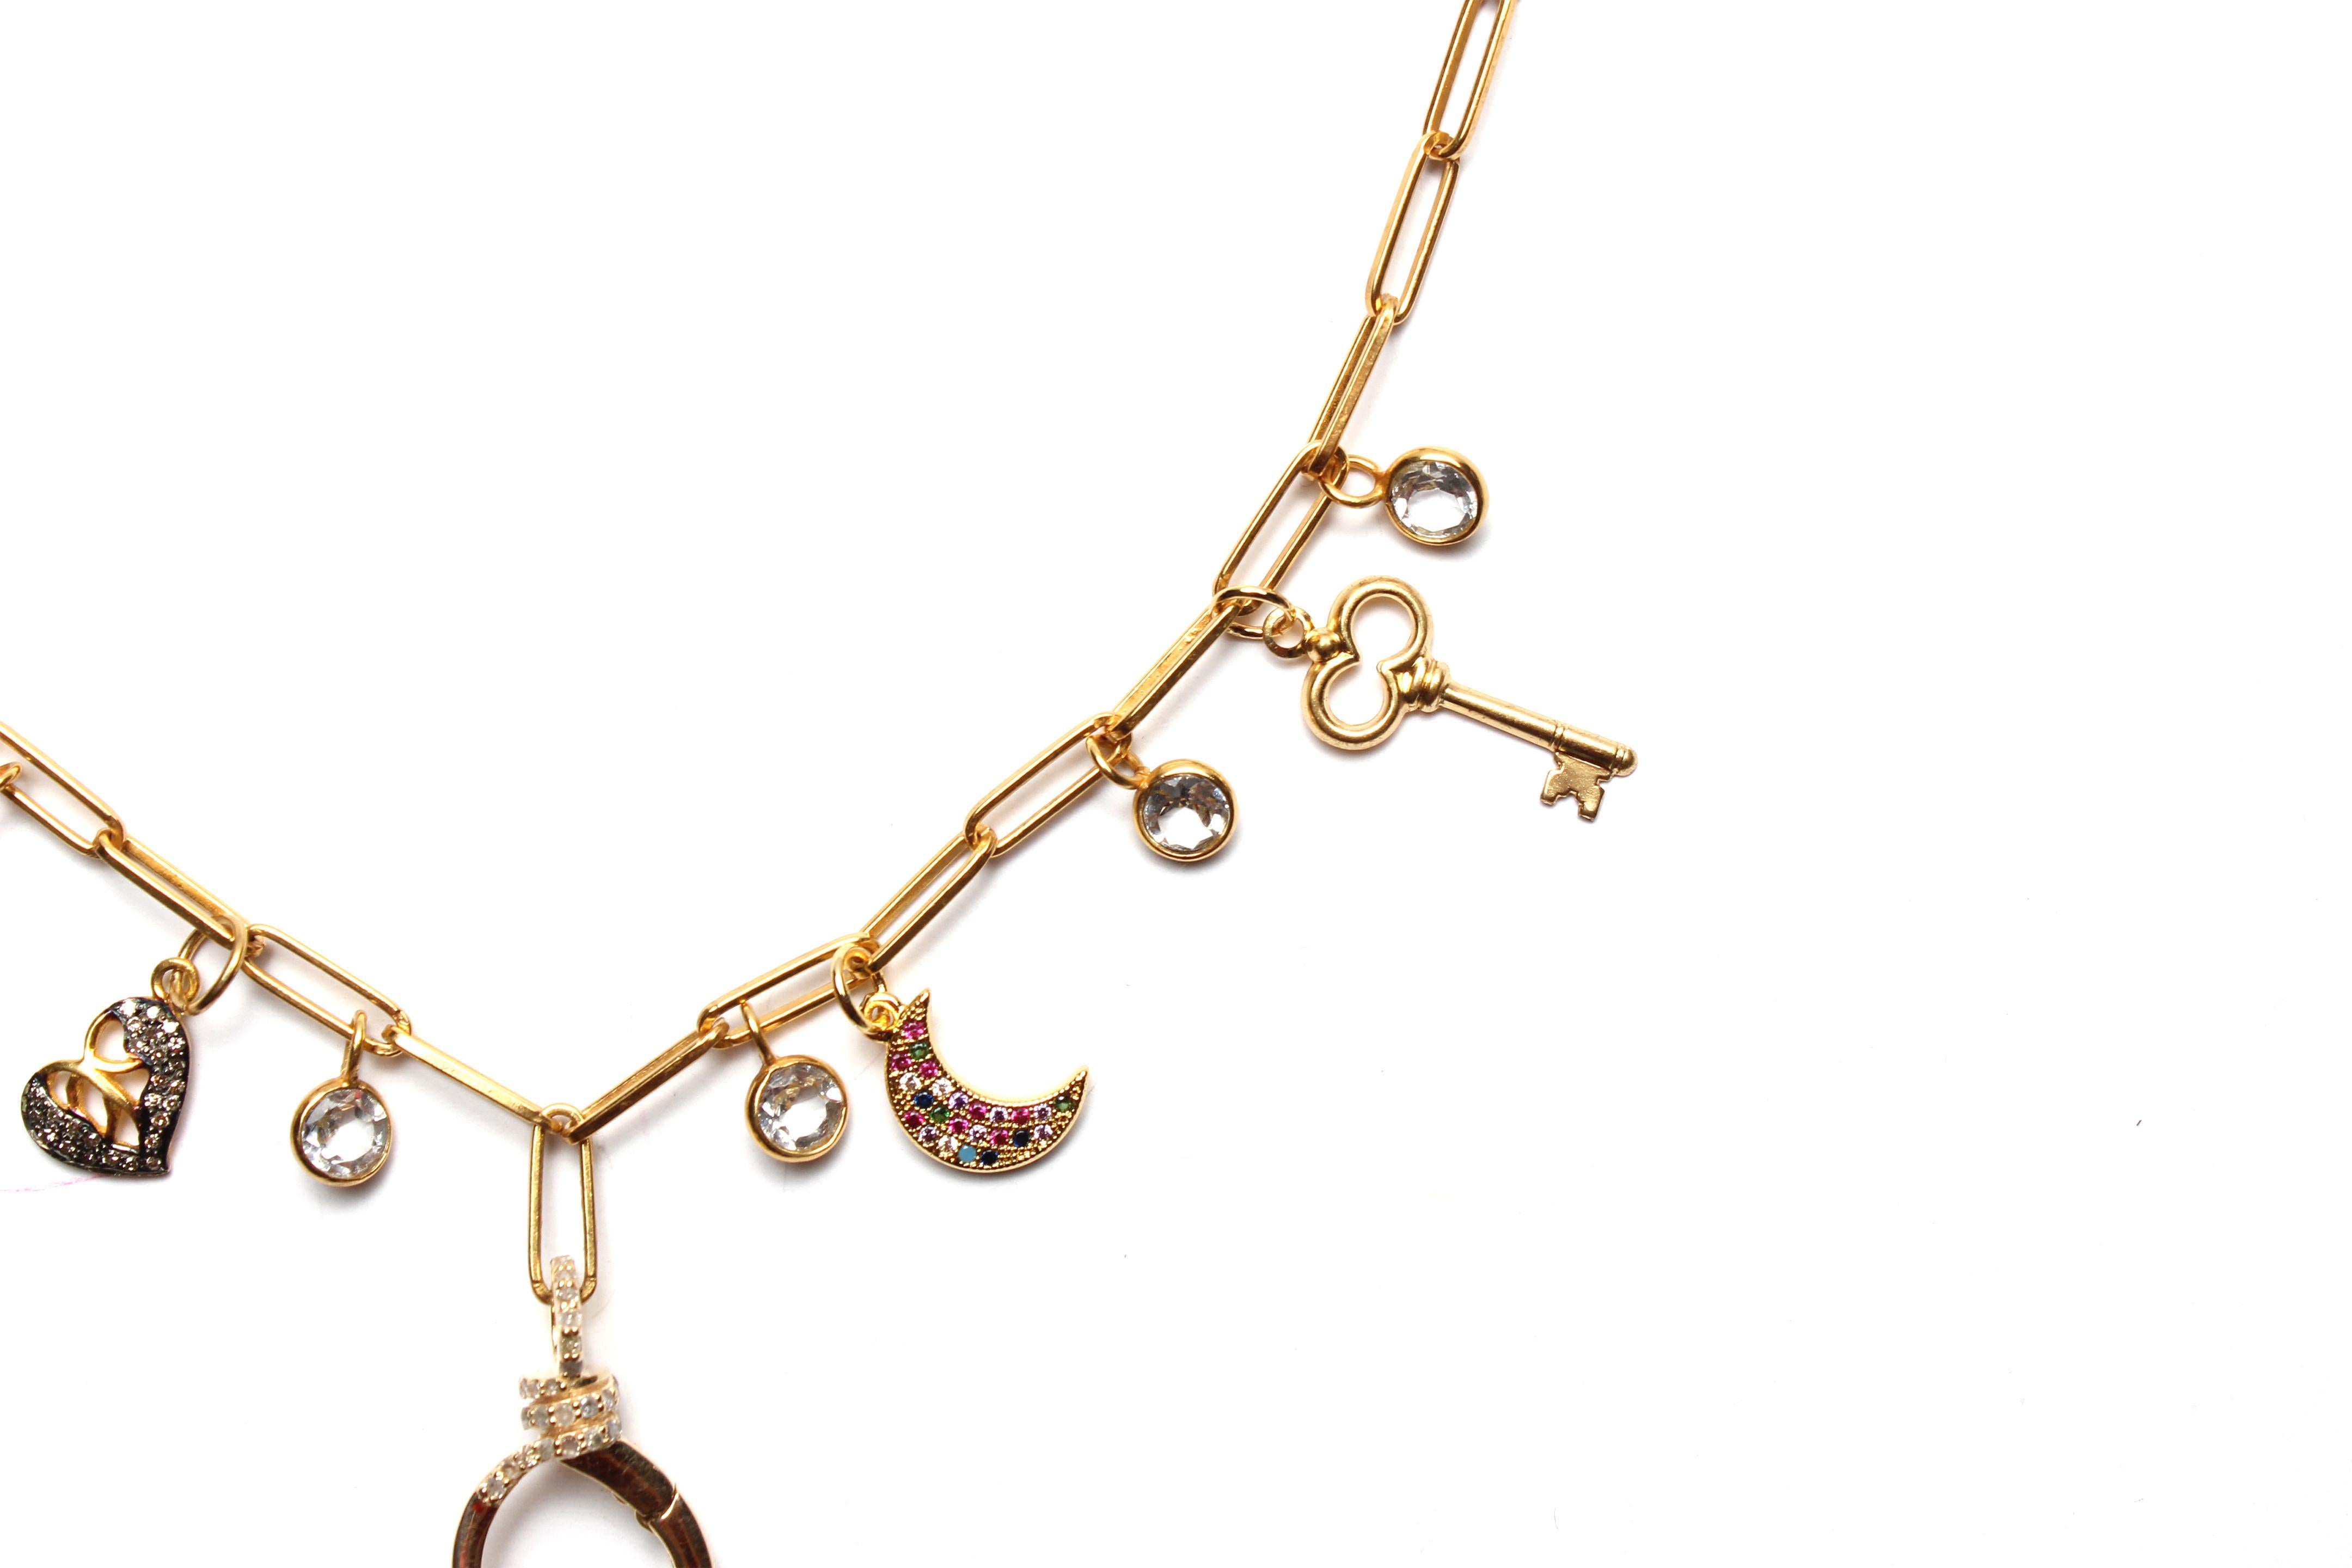 Clarissa Bronfman Signature Multi Charm Gold Ppr Clip Necklace & Tanzanite Charm For Sale 2